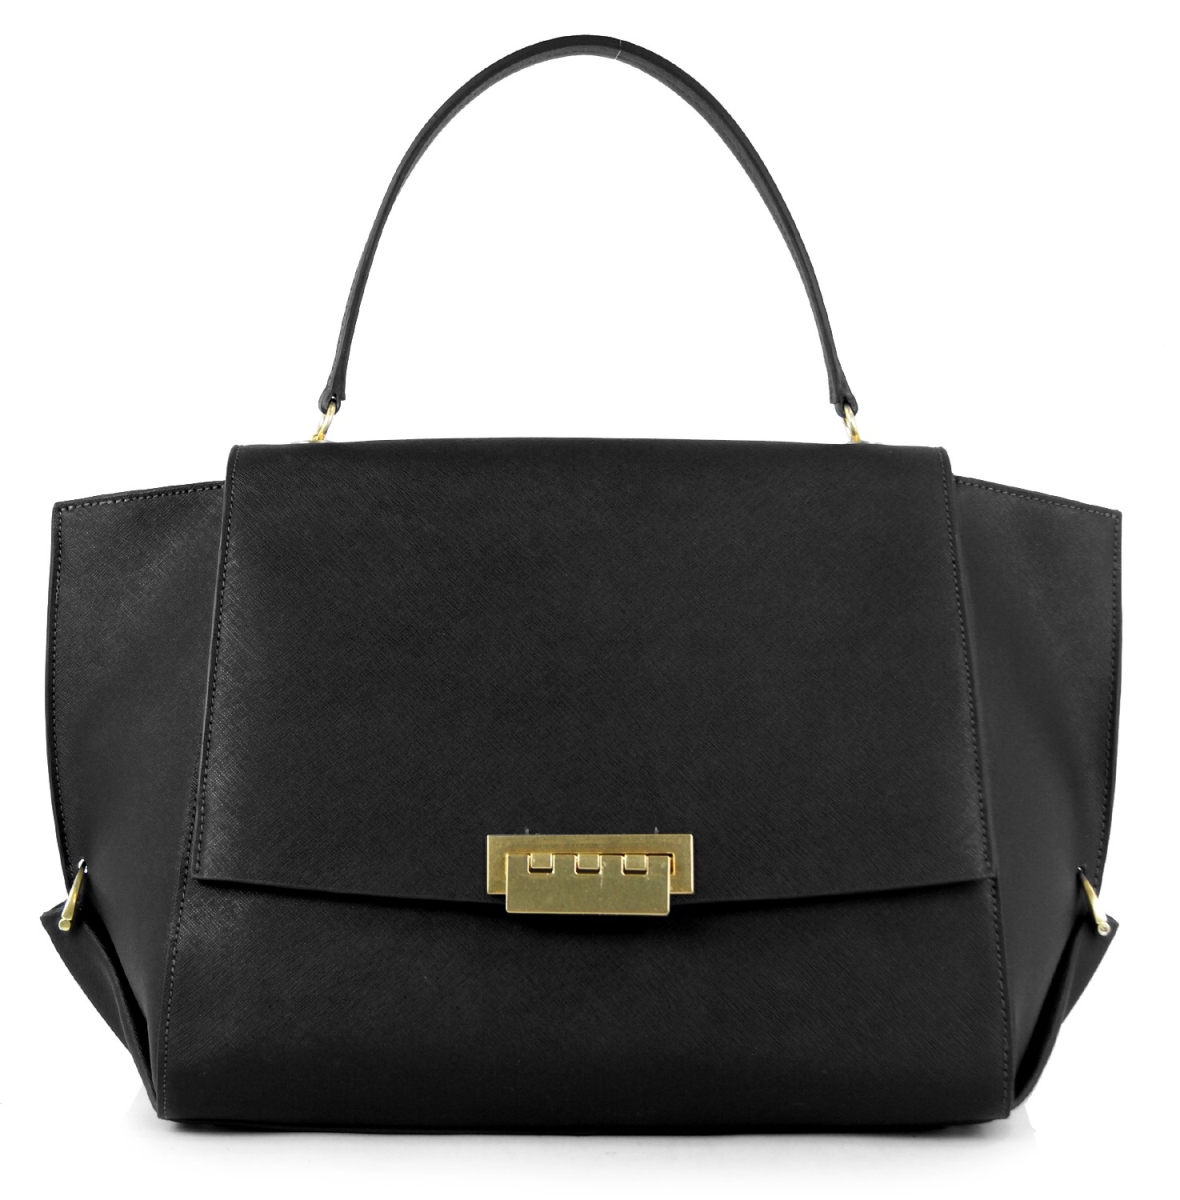 Zp727 001 Eartha Flap Handbag, Black